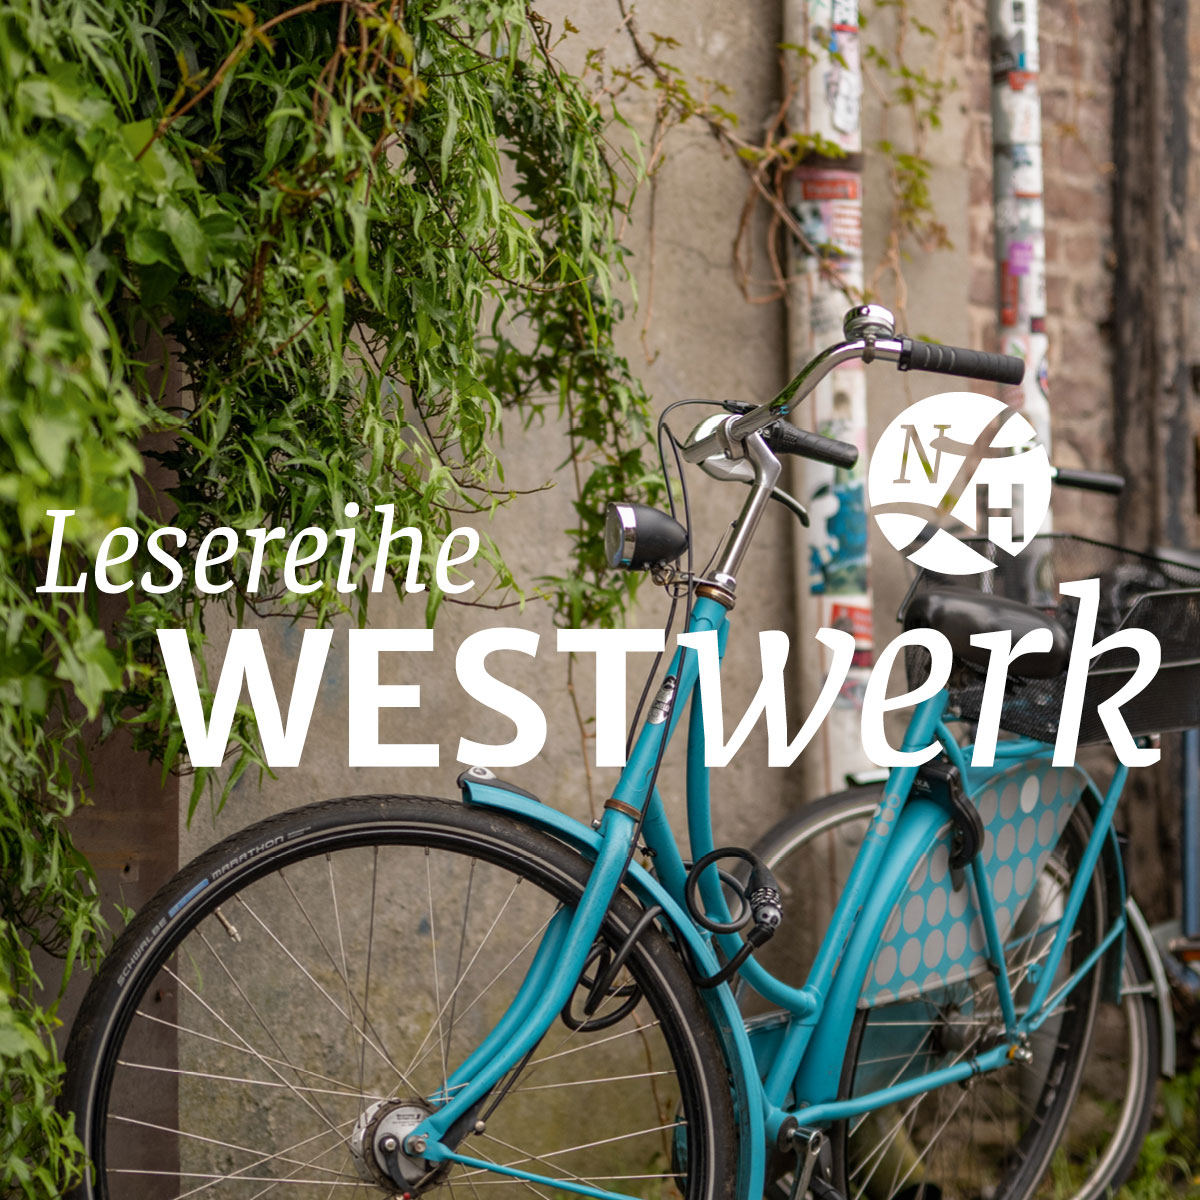 Titelbild der Lesereihe WestWerk des Niederrheinischen Literaturhauses